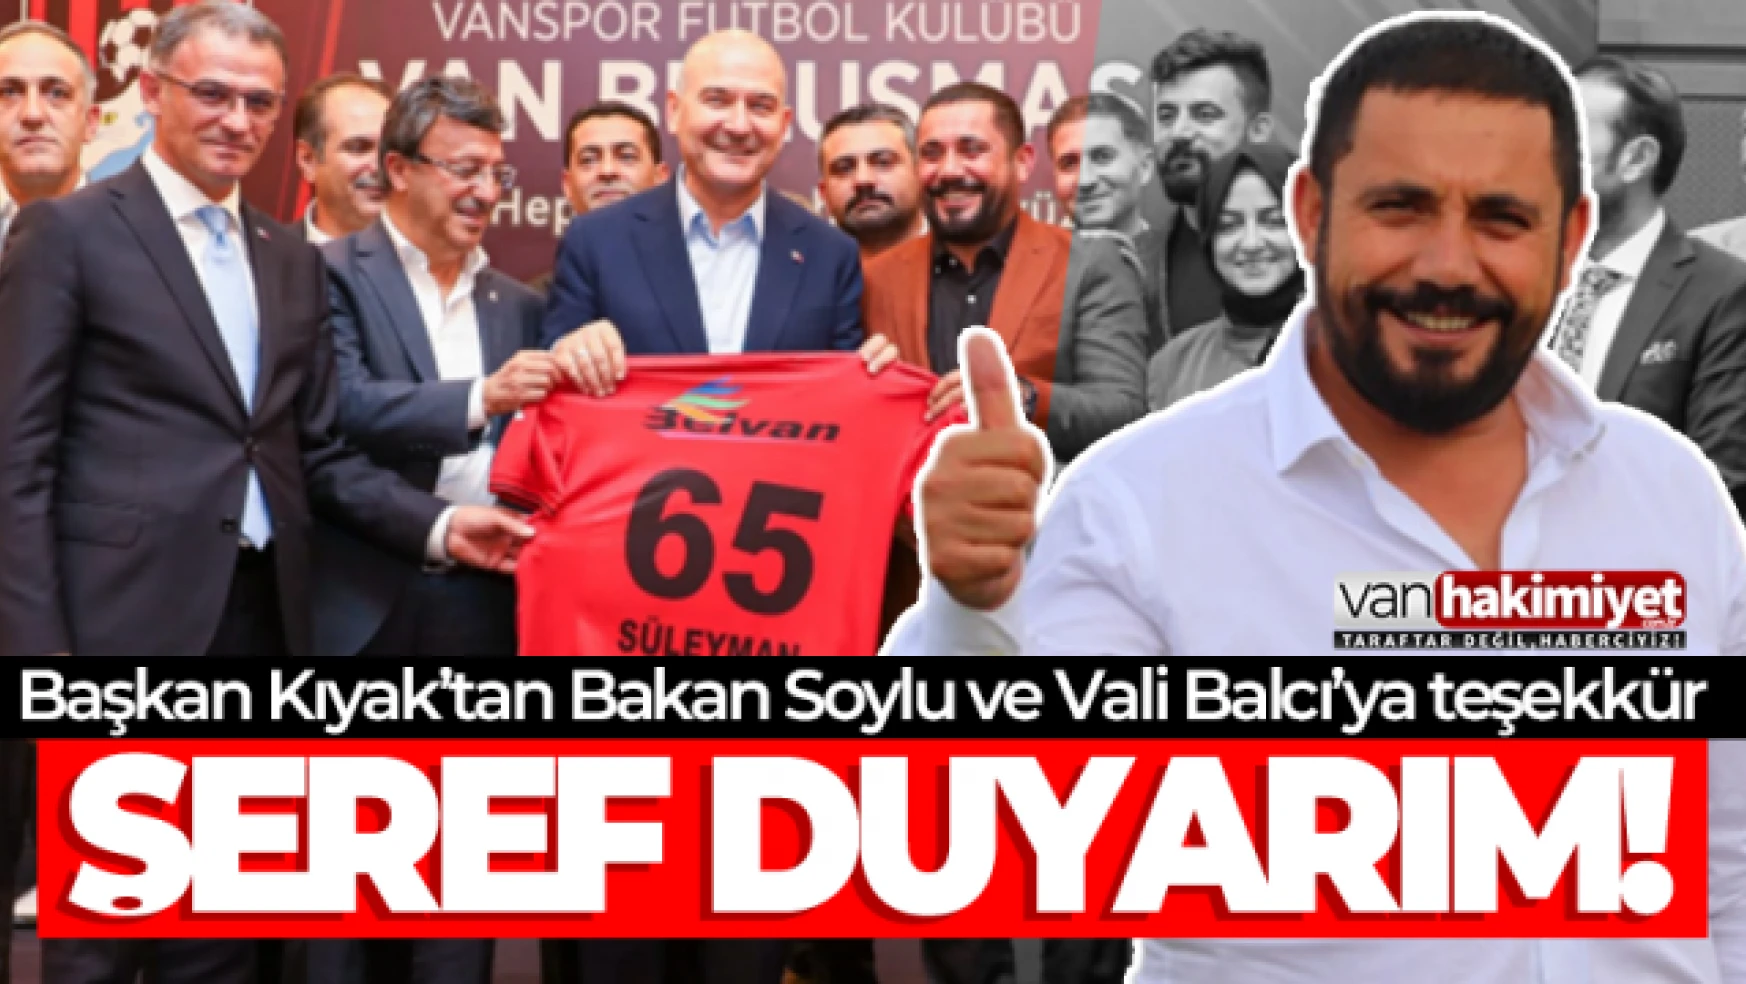 Vanspor Başkanı Feyat Kıyak'tan Bakan Soylu ve Vali Balcı'ya Teşekkür